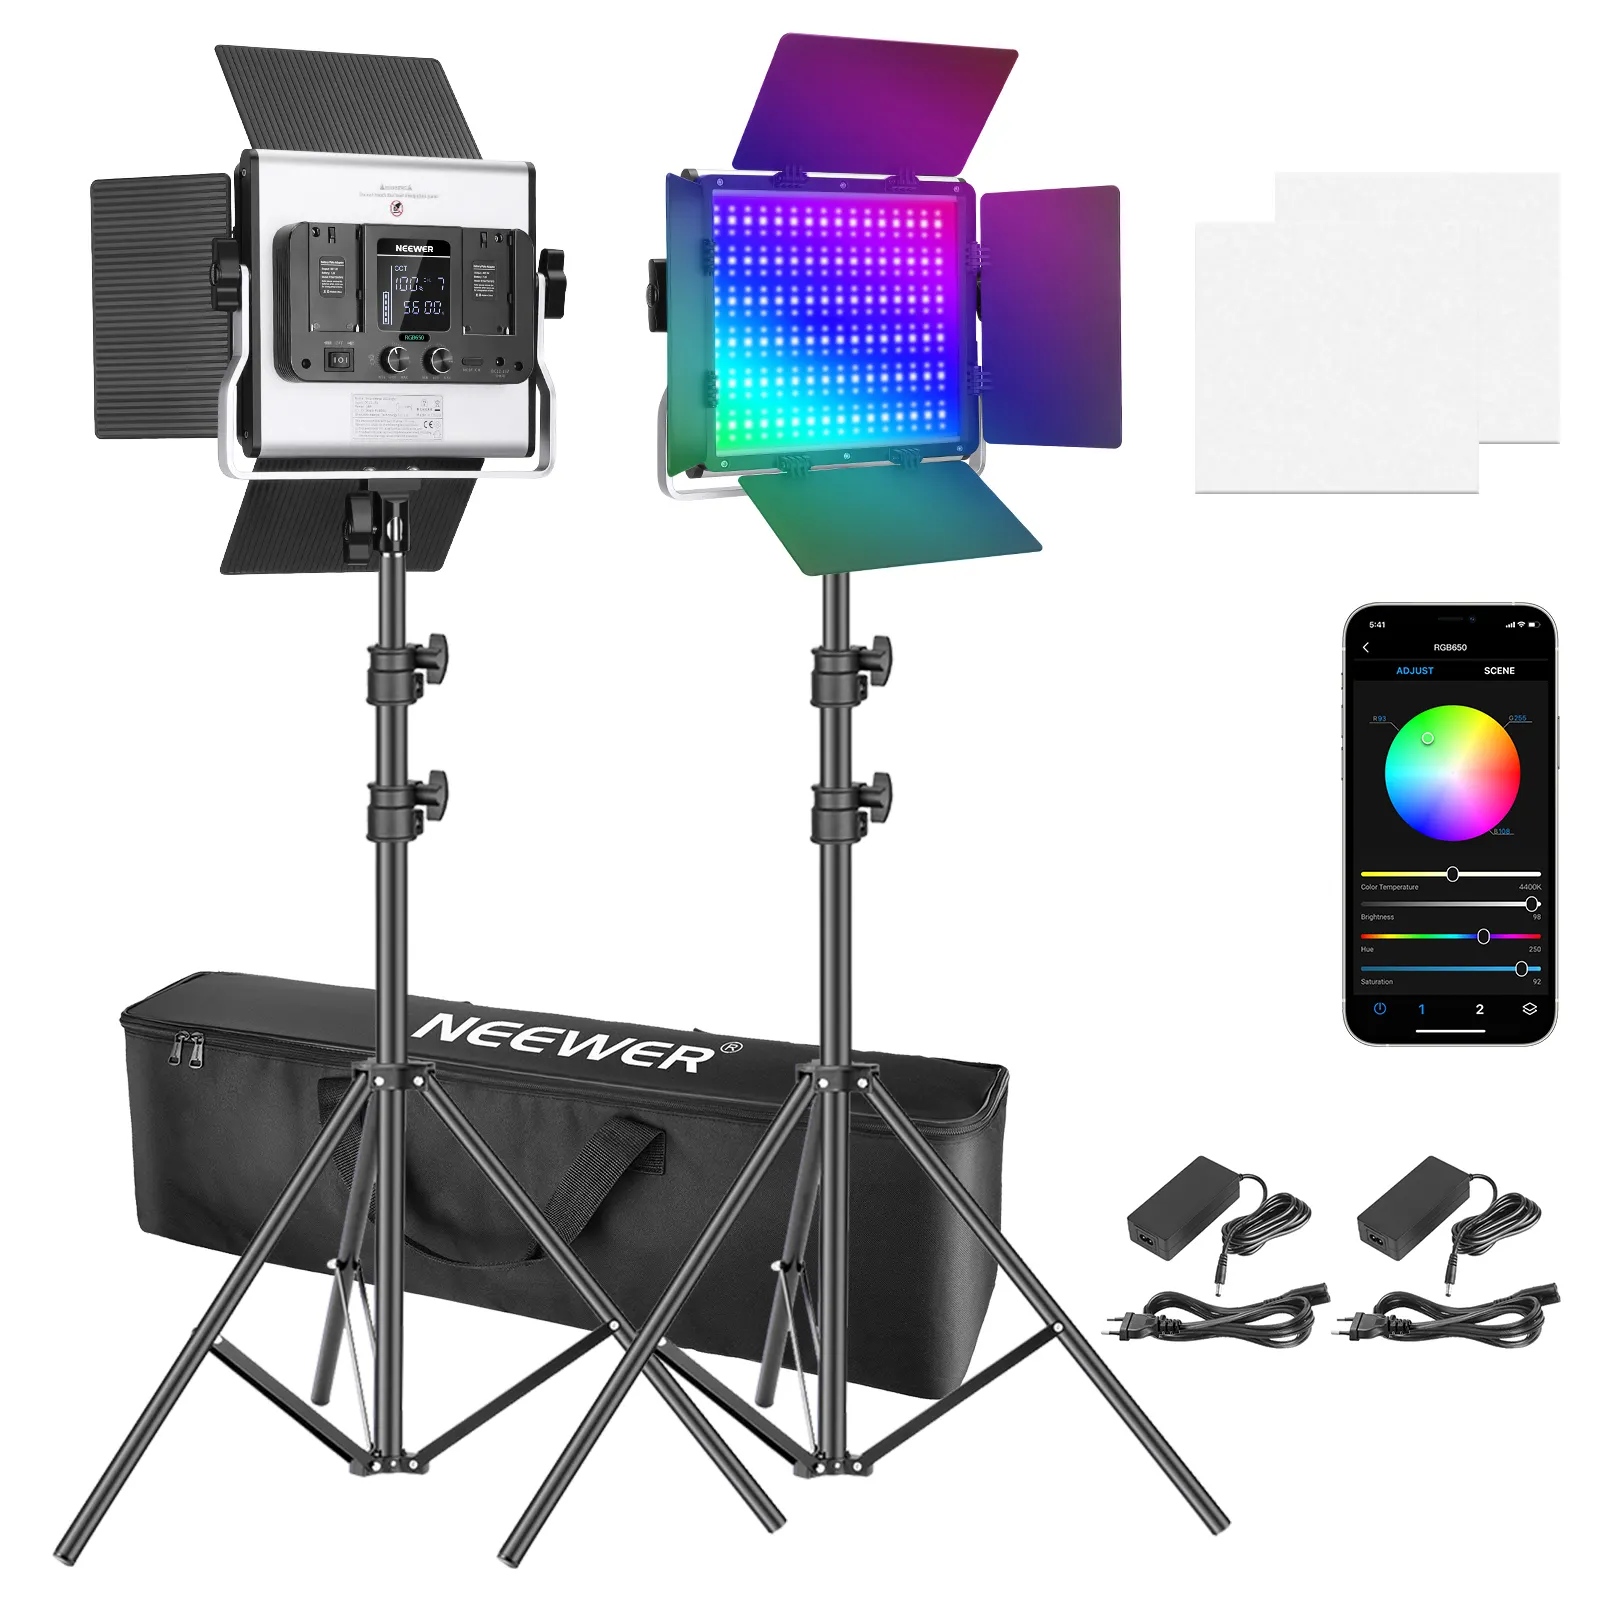 Neewer-torche vidéo LED RGB, dispositif avec contrôle par application, Kit d'éclairage vidéo avec CRI 97 +, pour Zoom, YouTube, Webex, diffusion et photographie